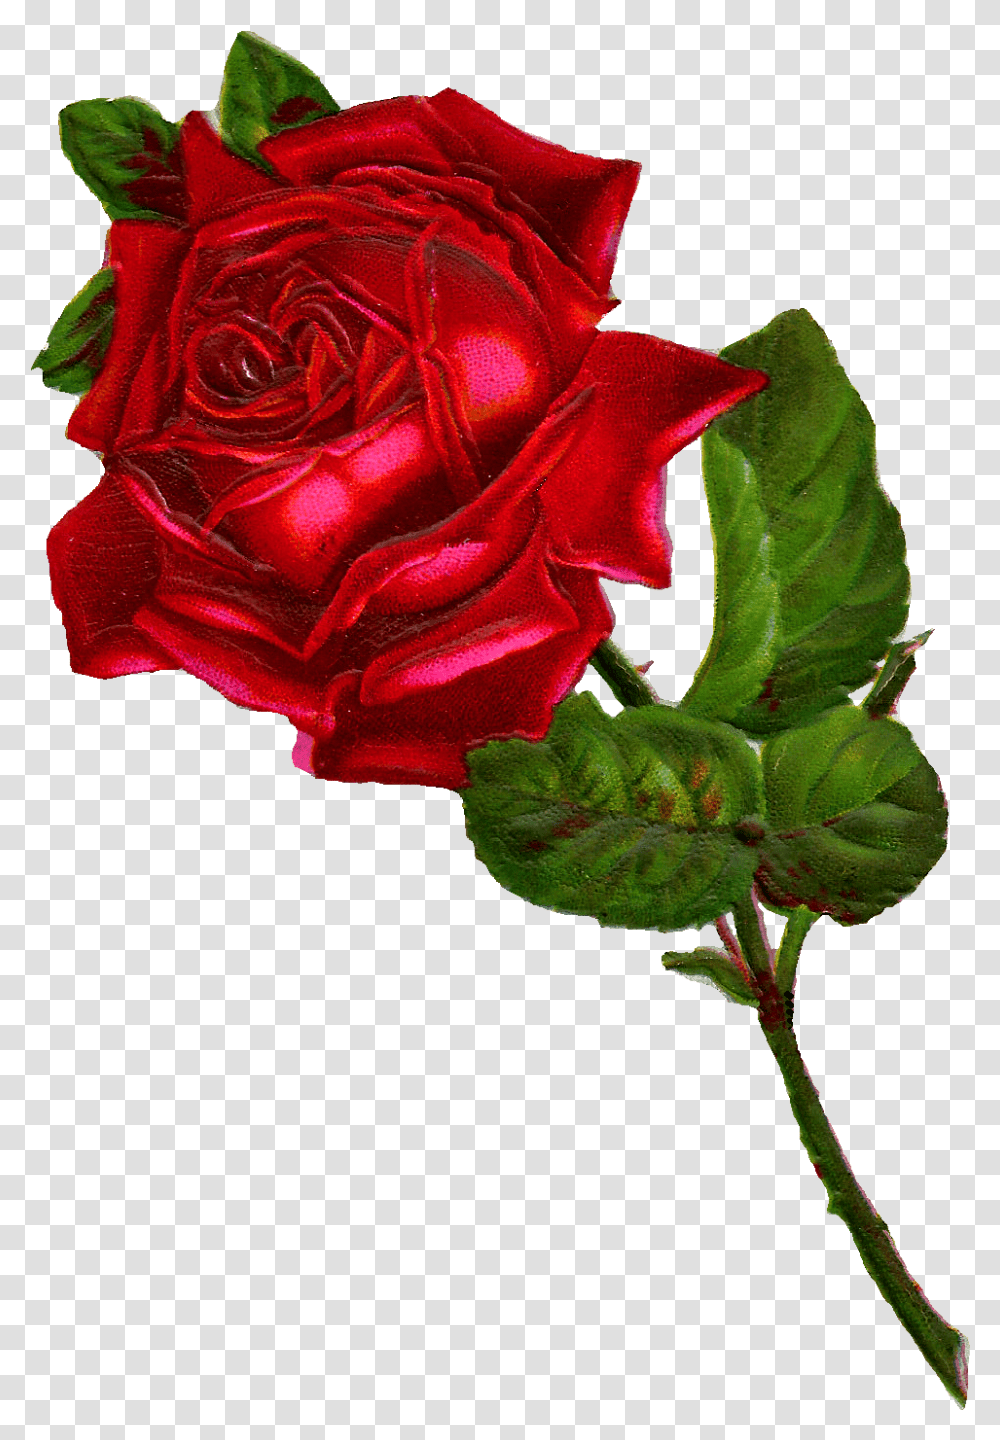 Rose Digital Clip Art Clipart Vintage Red Rose, Flower, Plant, Blossom, Flower Arrangement Transparent Png